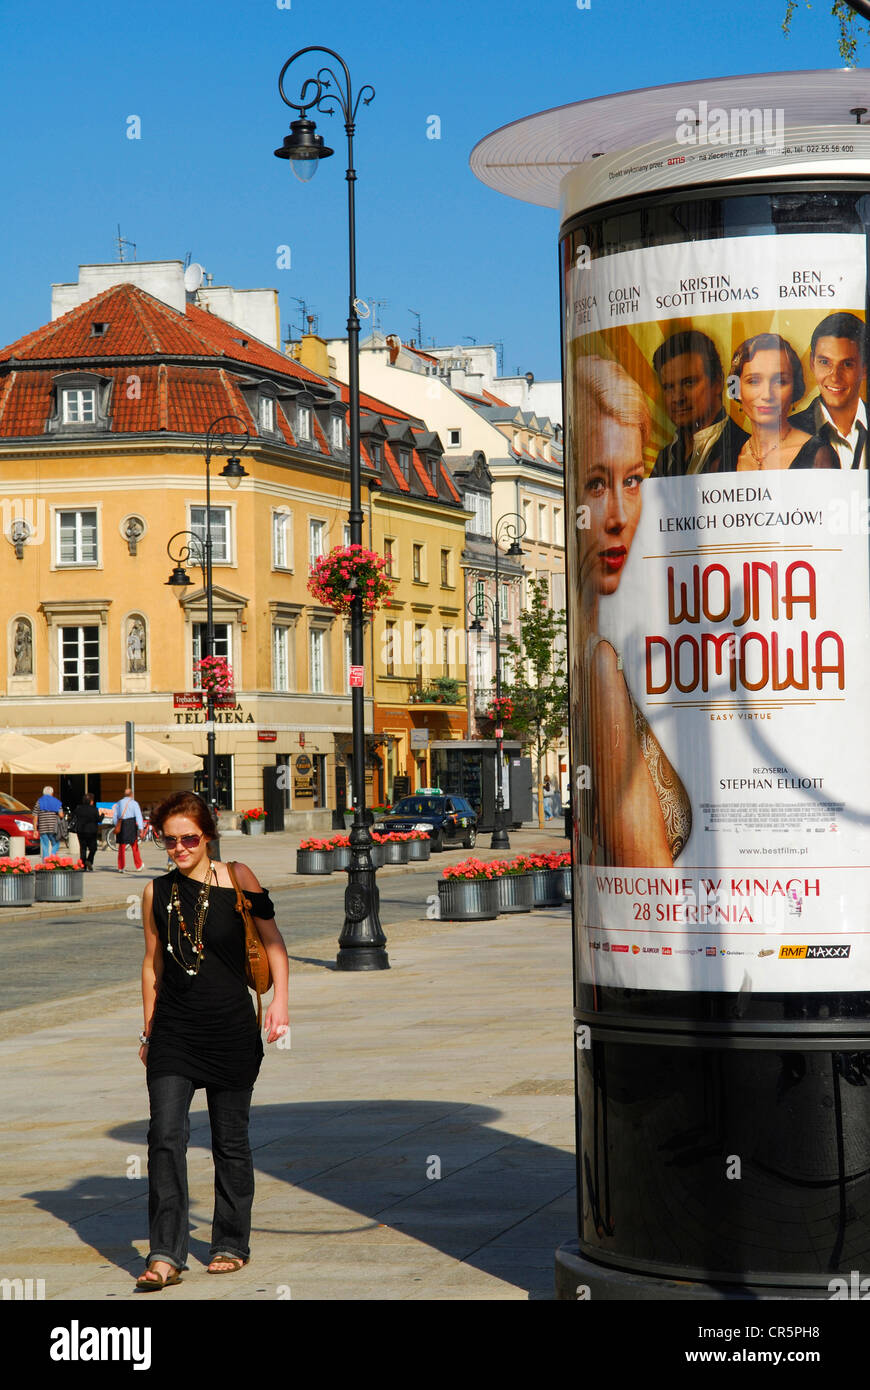 Poland, Warsaw, street scene along Krakowskie Przedmiescie Street Stock Photo